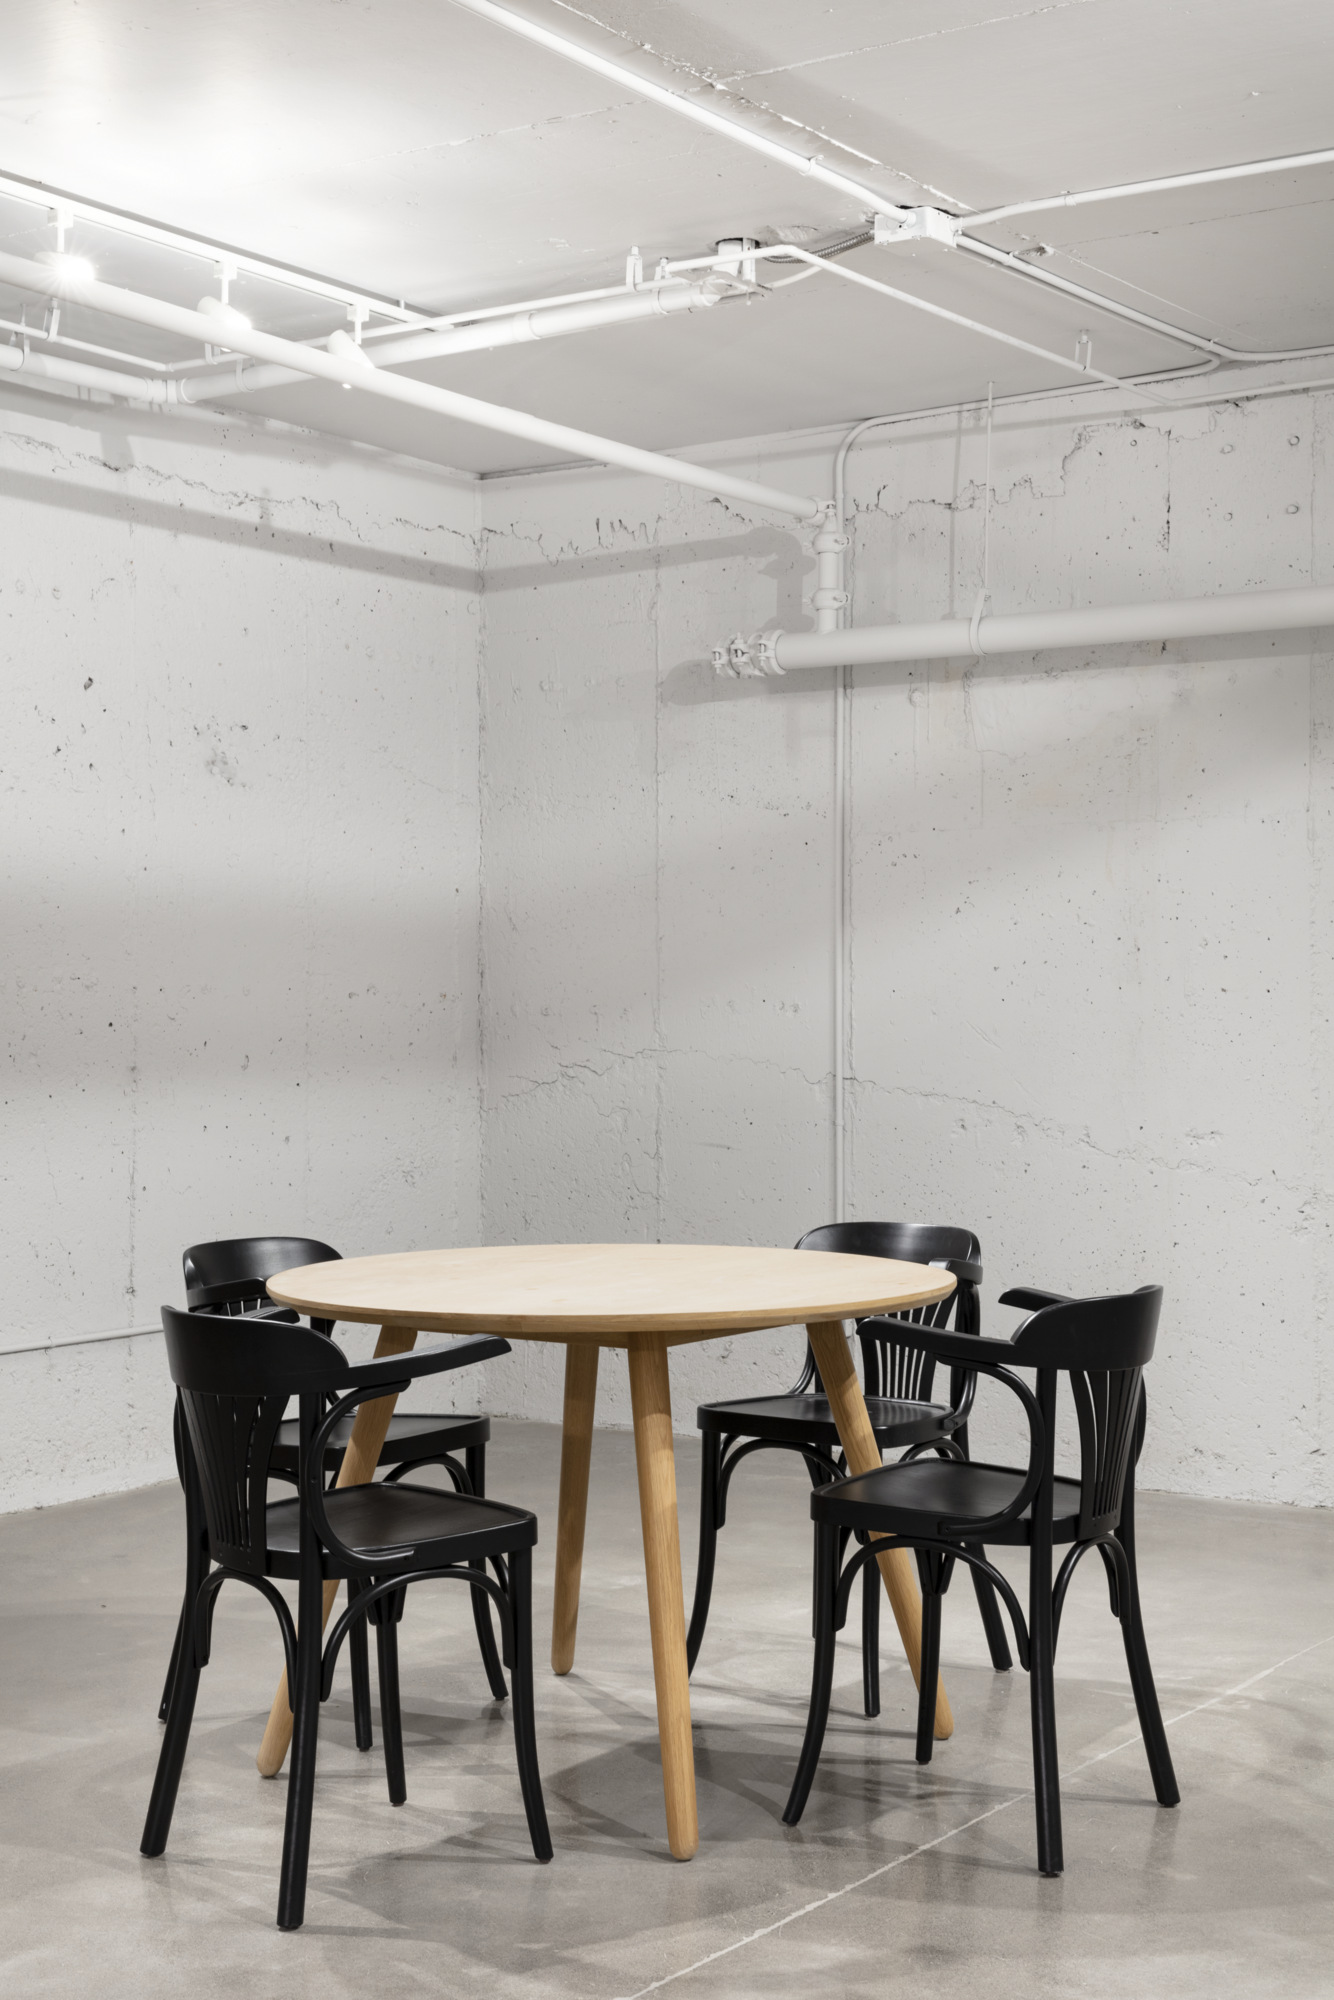 图片[6]|OATBOX办公室-蒙特利尔|ART-Arrakis | 建筑室内设计的创新与灵感